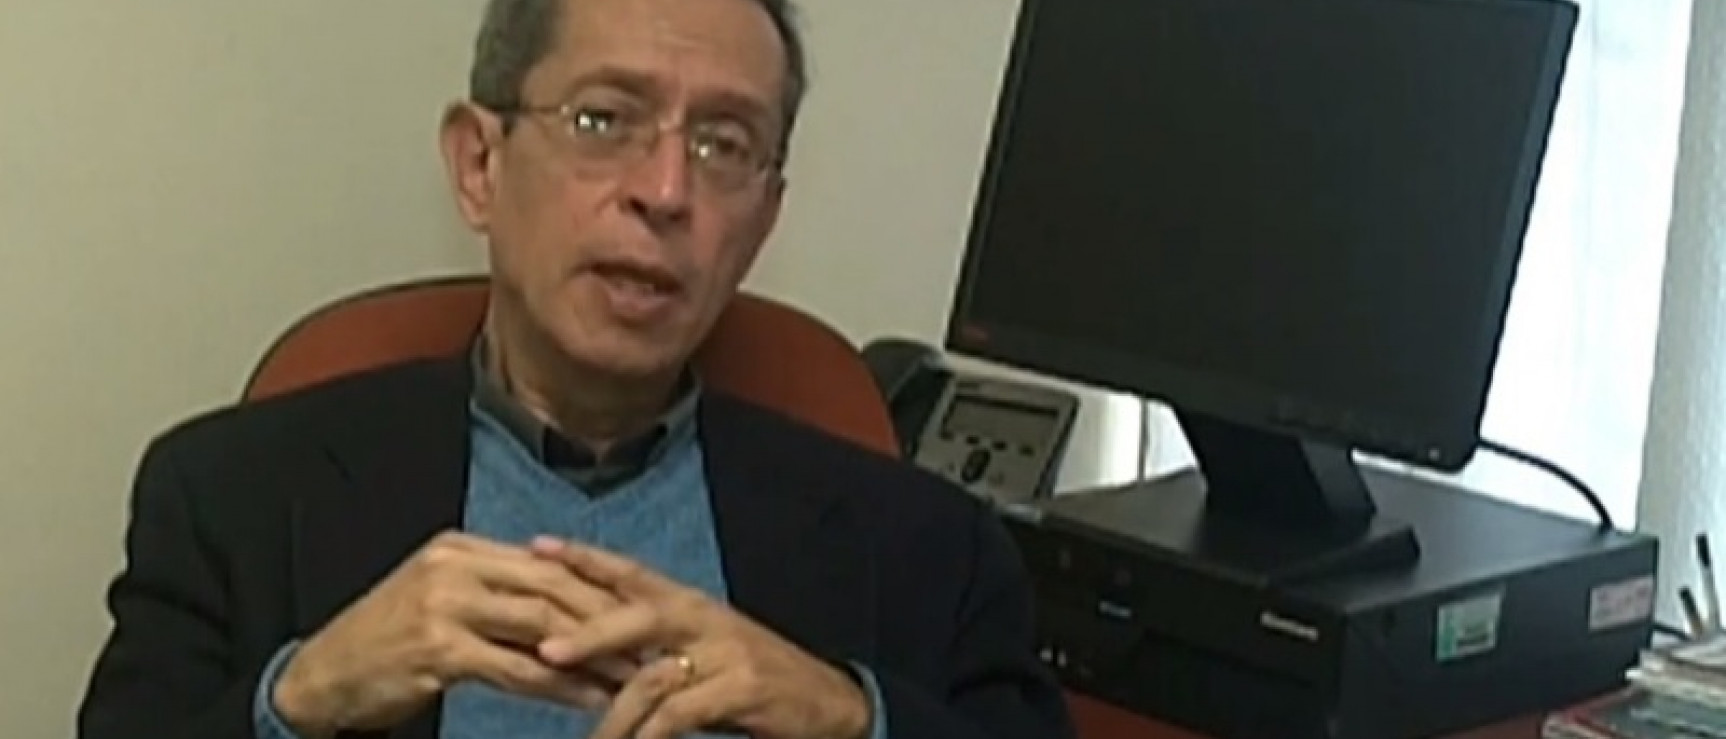 Oswaldo Holguín, miembro de número de la Academia Peruana de la Lengua. Foto: YouTube.